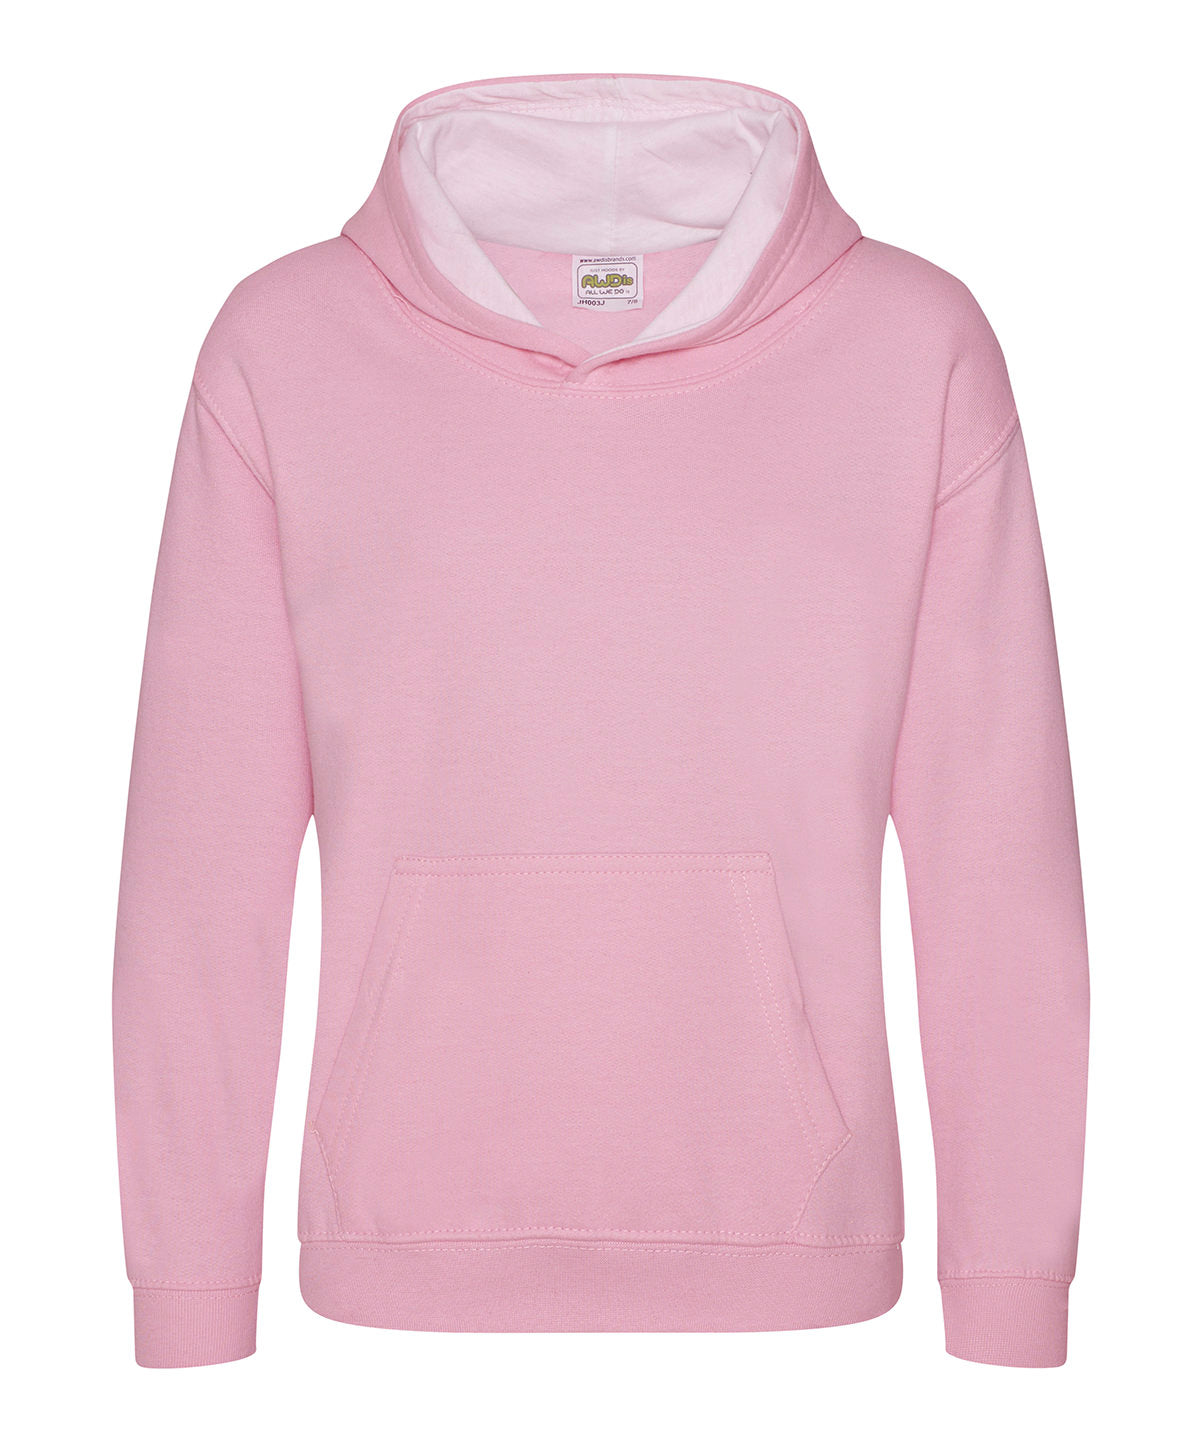 Personalised Hoodies - Light Pink AWDis Just Hoods Kids varsity hoodie